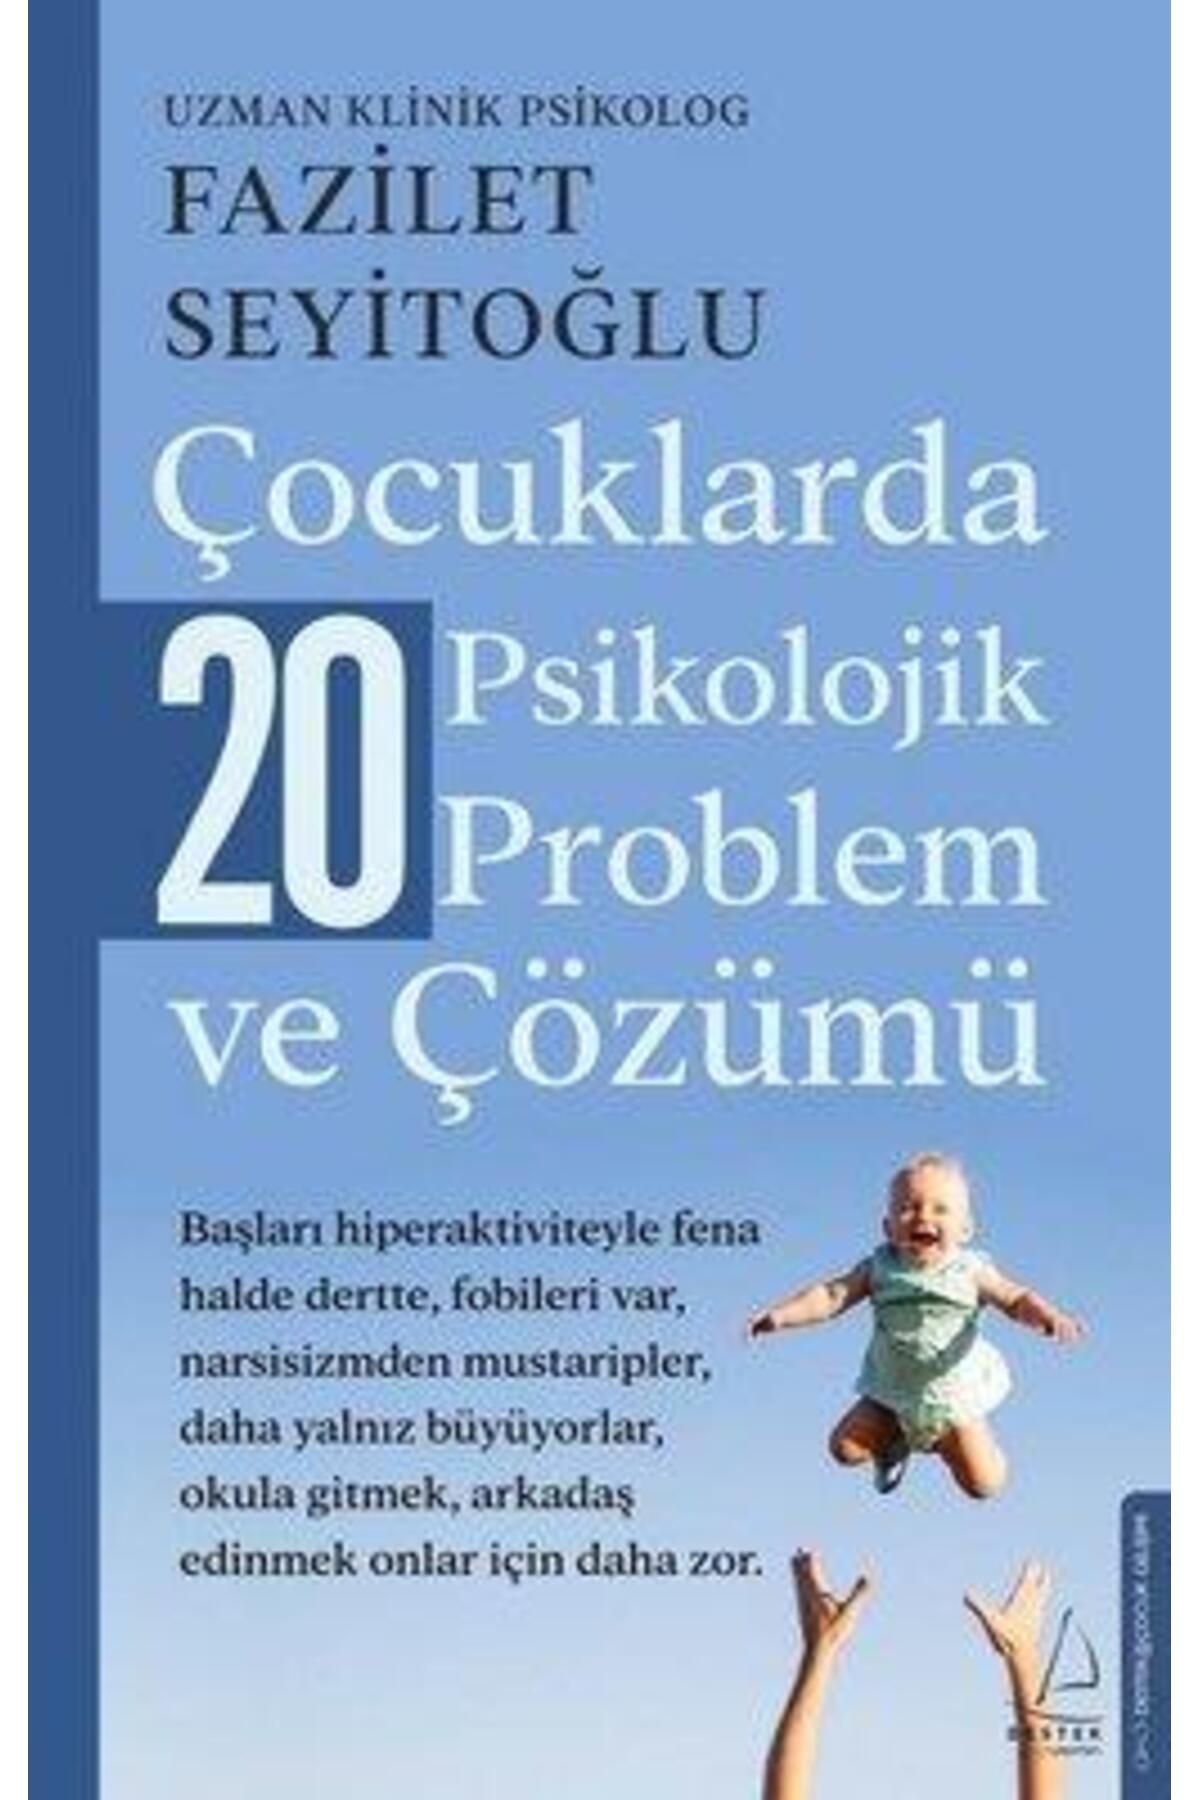 Destek Yayınları Çocuklarda 20 Psikolojik Problem ve Çözümü